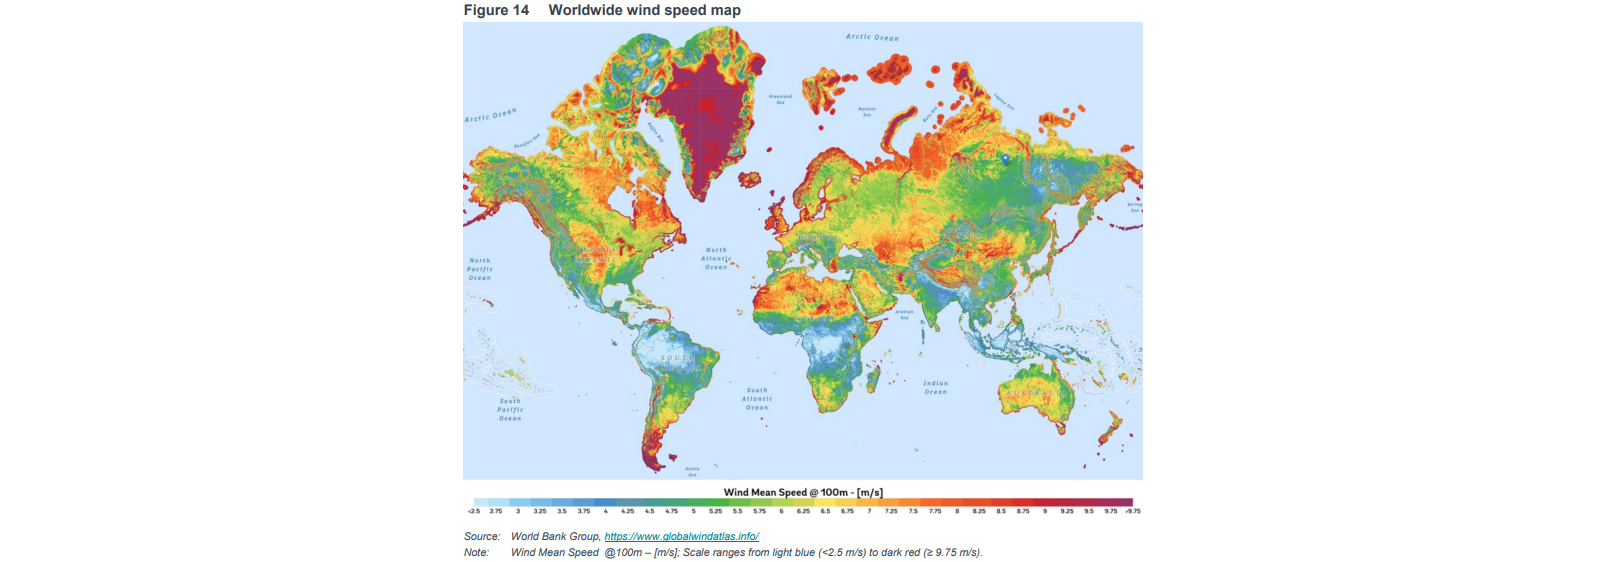 Worldwide wind speed map